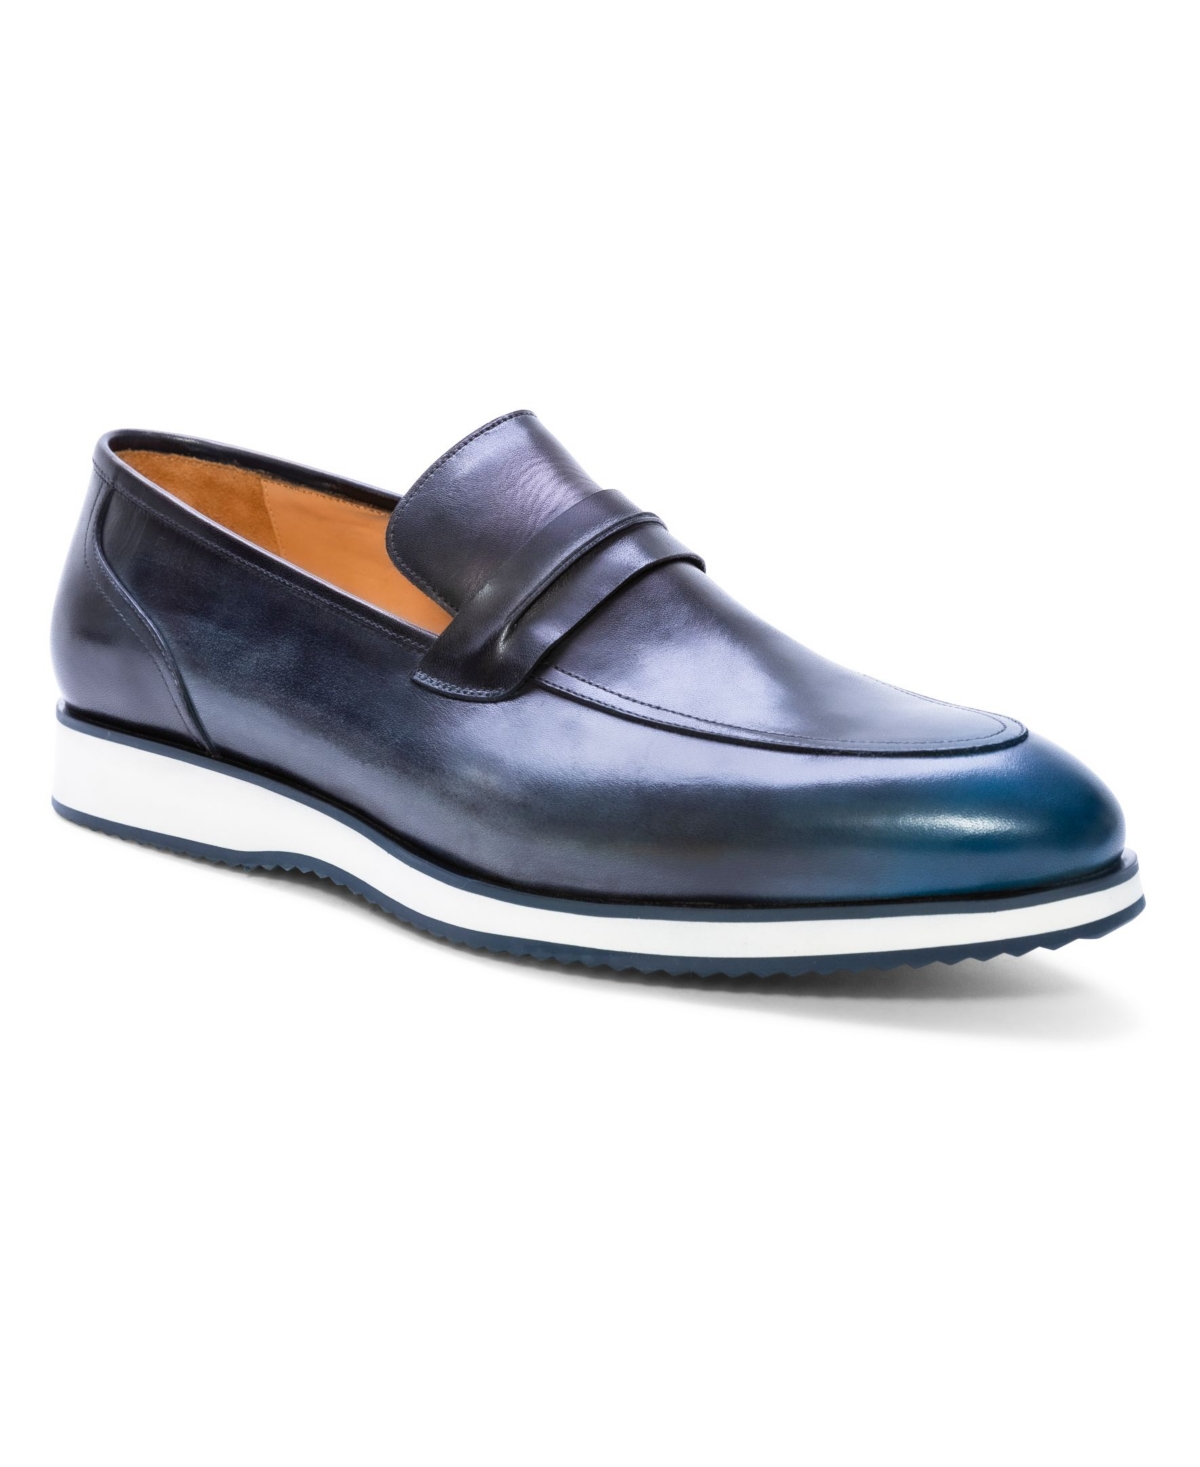 Ike Behar Men's Handmade Hybrid Loafer Men's Shoes